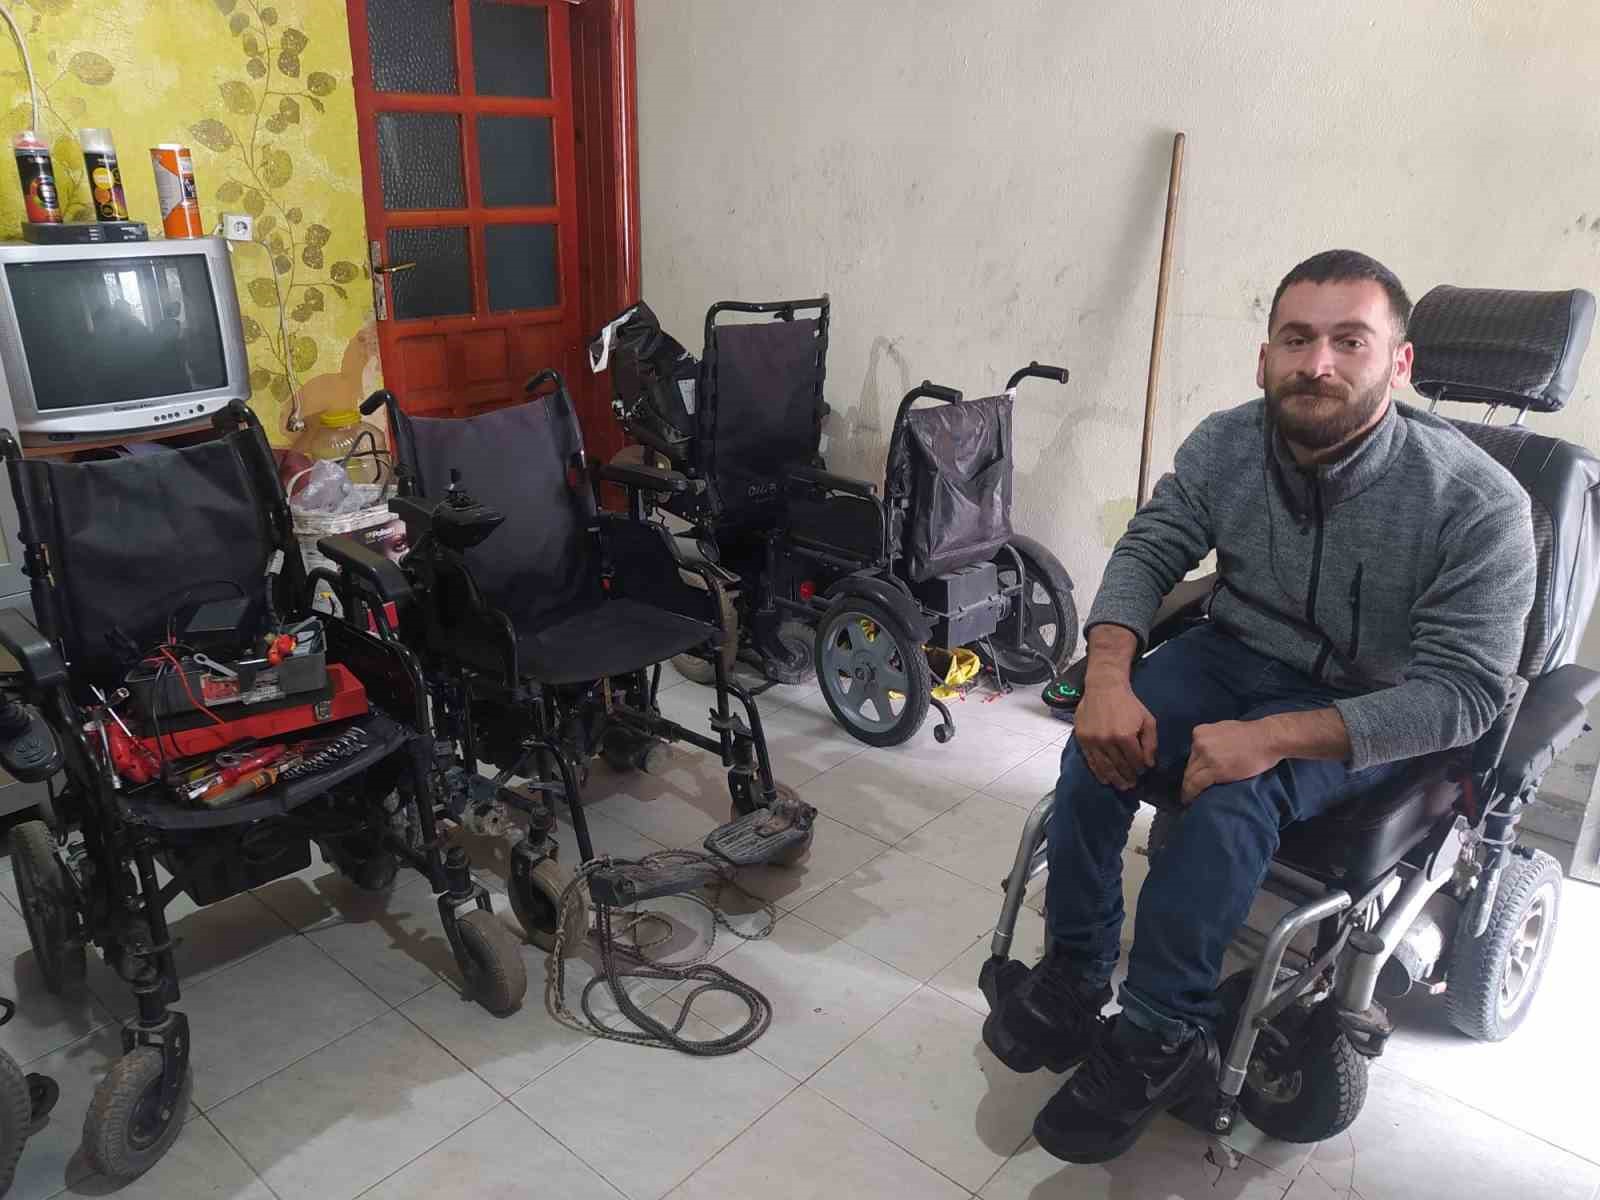 Engelli genç, kendisi gibi engelli olanlara umut oluyor